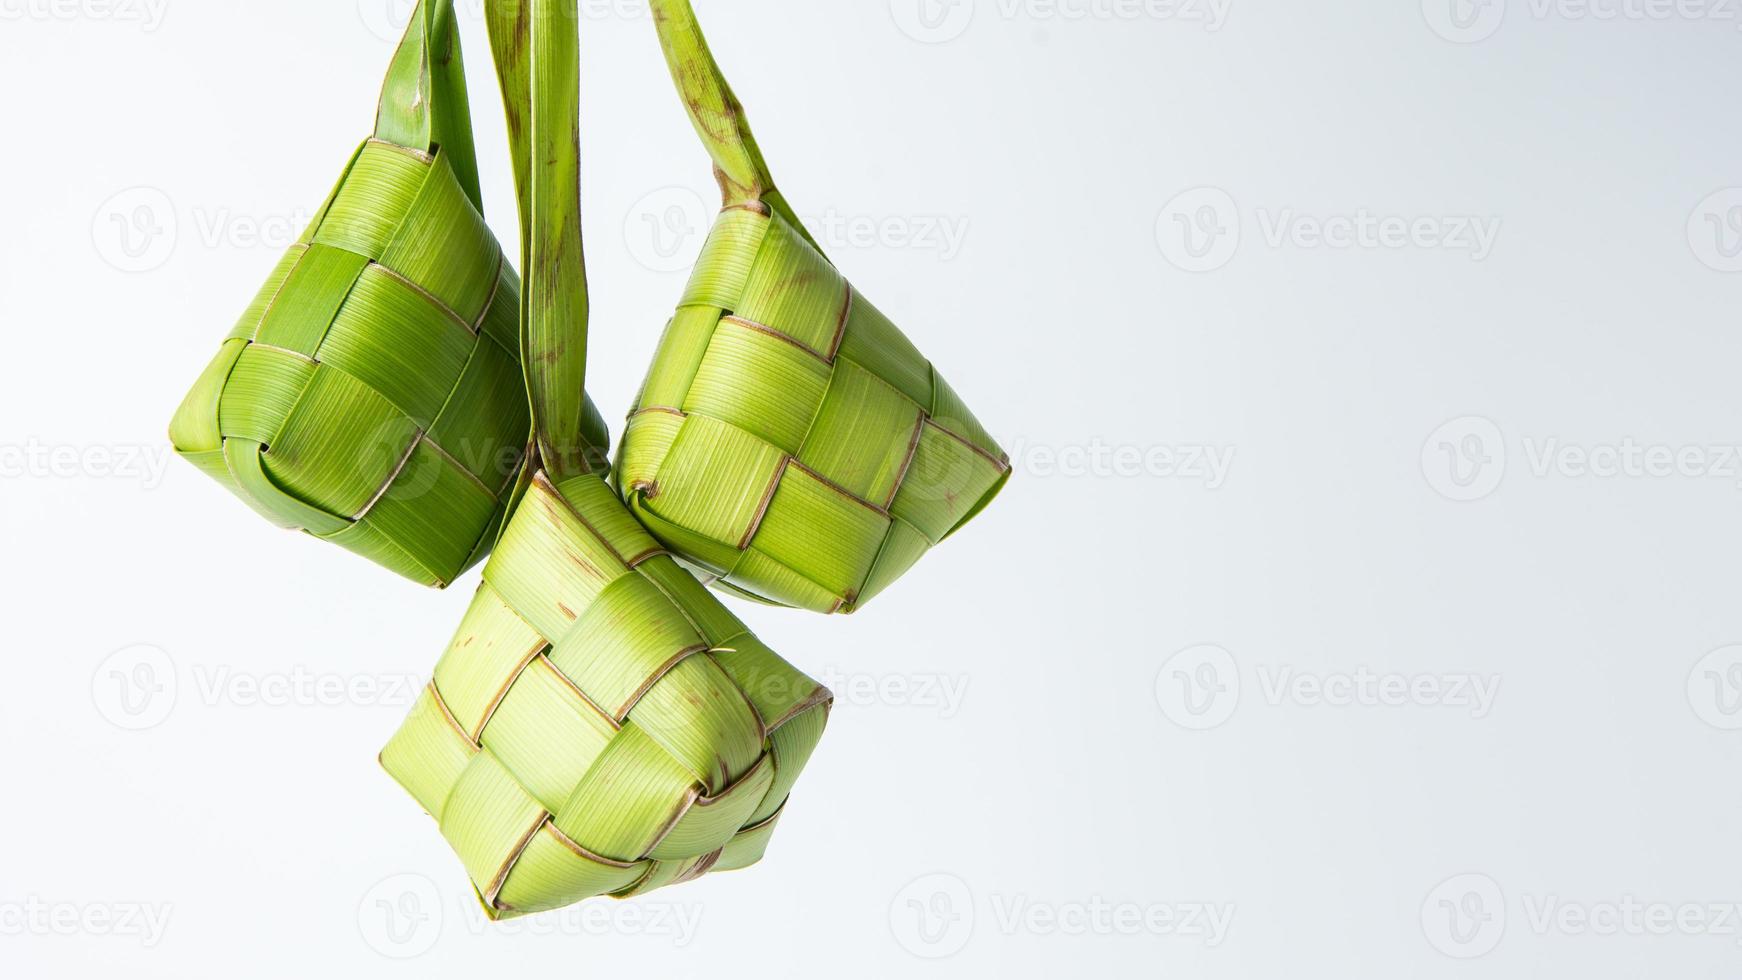 ketupat lebaran est une typique indonésien nourriture pendant le de fête saison de ketupat, eid Al Fitr, eid Al adha, Naturel riz emballage fabriqué de Jeune noix de coco feuilles sur une blanc arrière-plan, vide espace photo